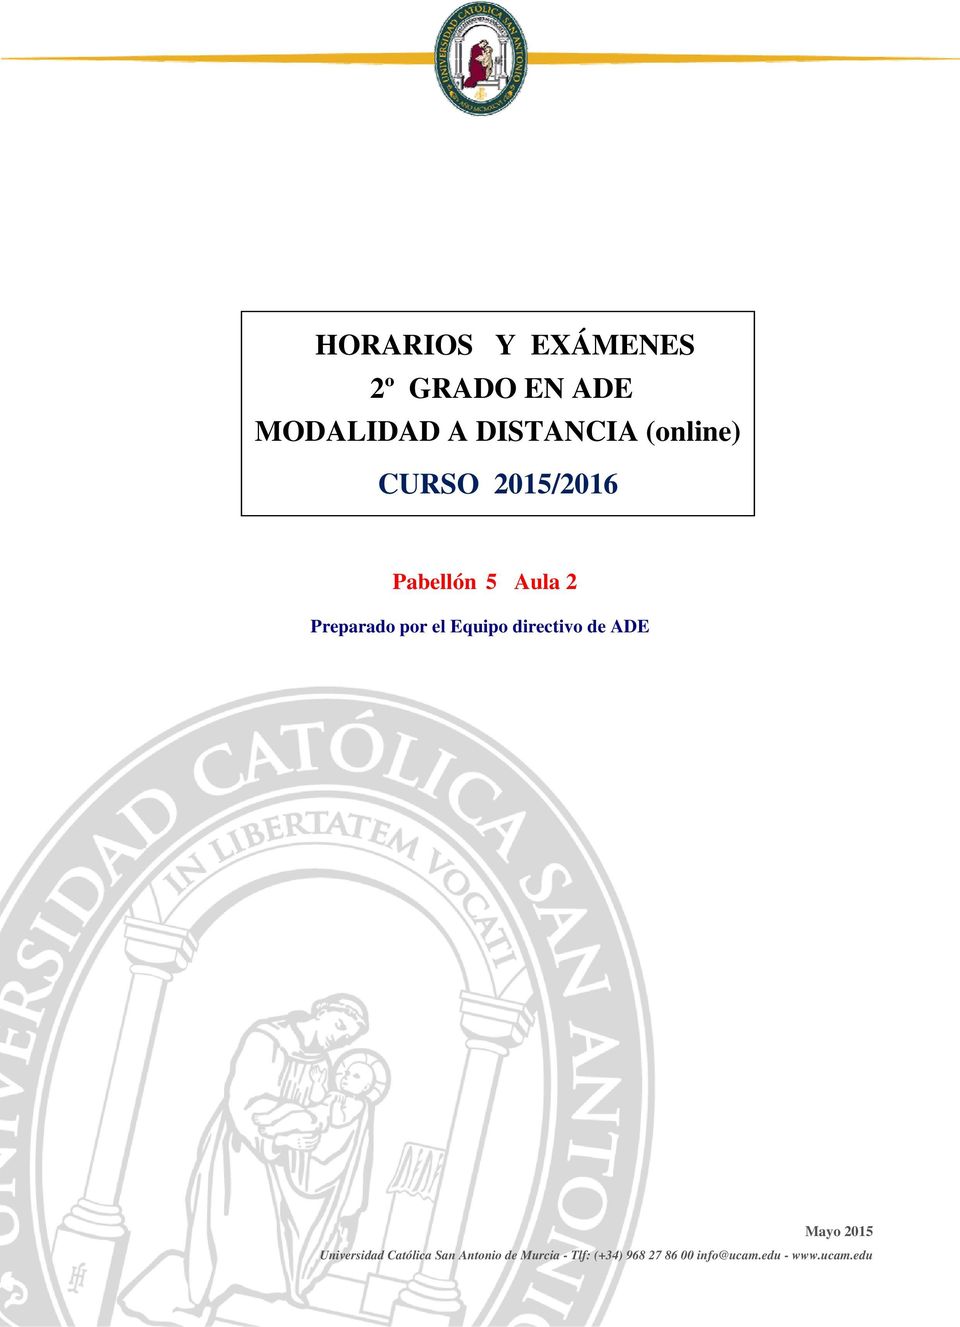 Equipo directivo de ADE Mayo 2015 Universidad Católica San